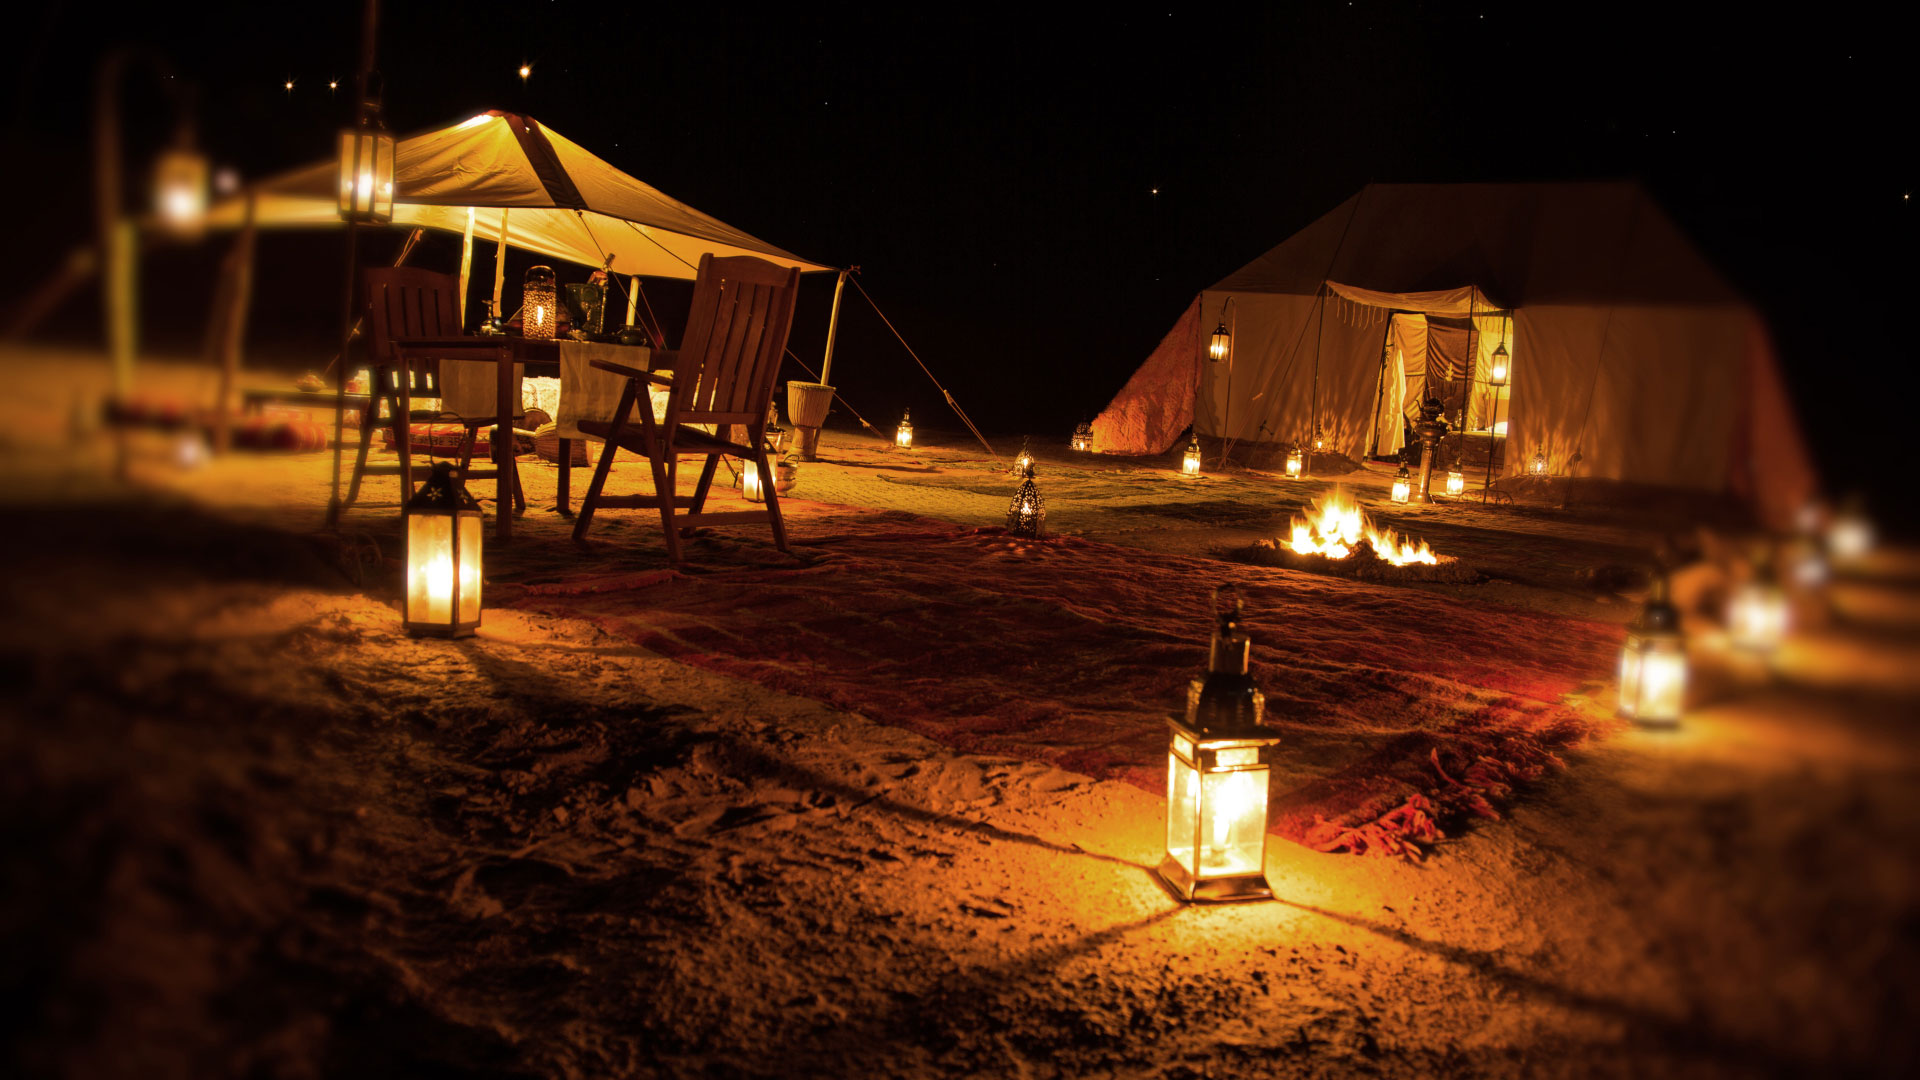 Dubai camp. Дубай бедуинский лагерь. Desert Safari Dubai Camping. Ночью шатры в пустыне. Бедуинская палатка.